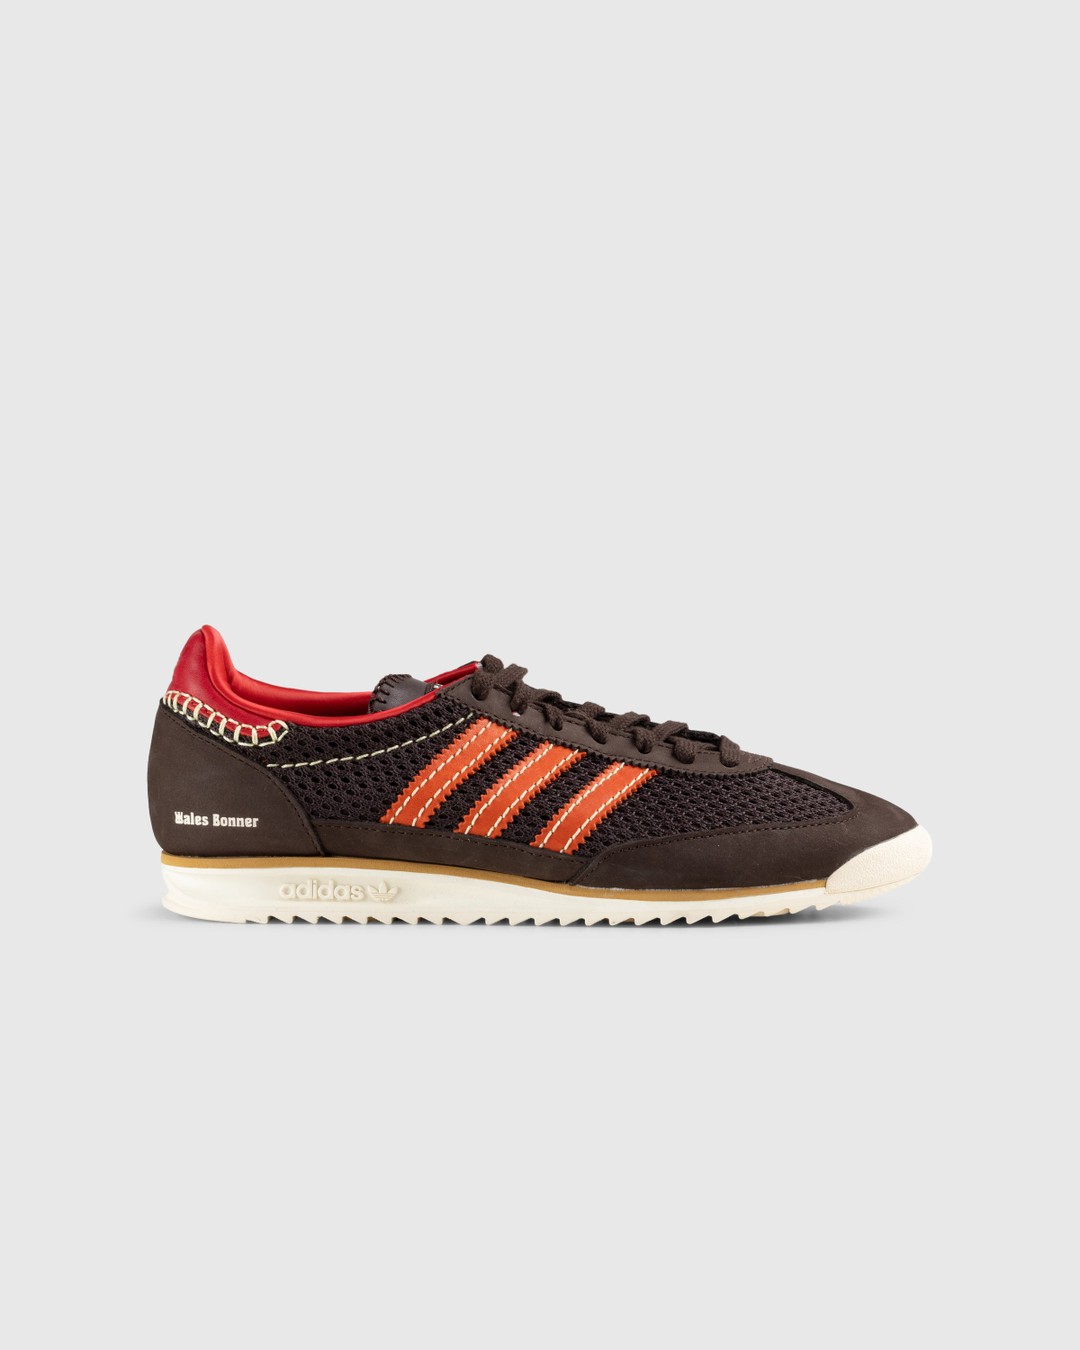 Adidas x Wales Bonner – SL72 Knit Dark Brown - Sneakers - Brown - Image 1